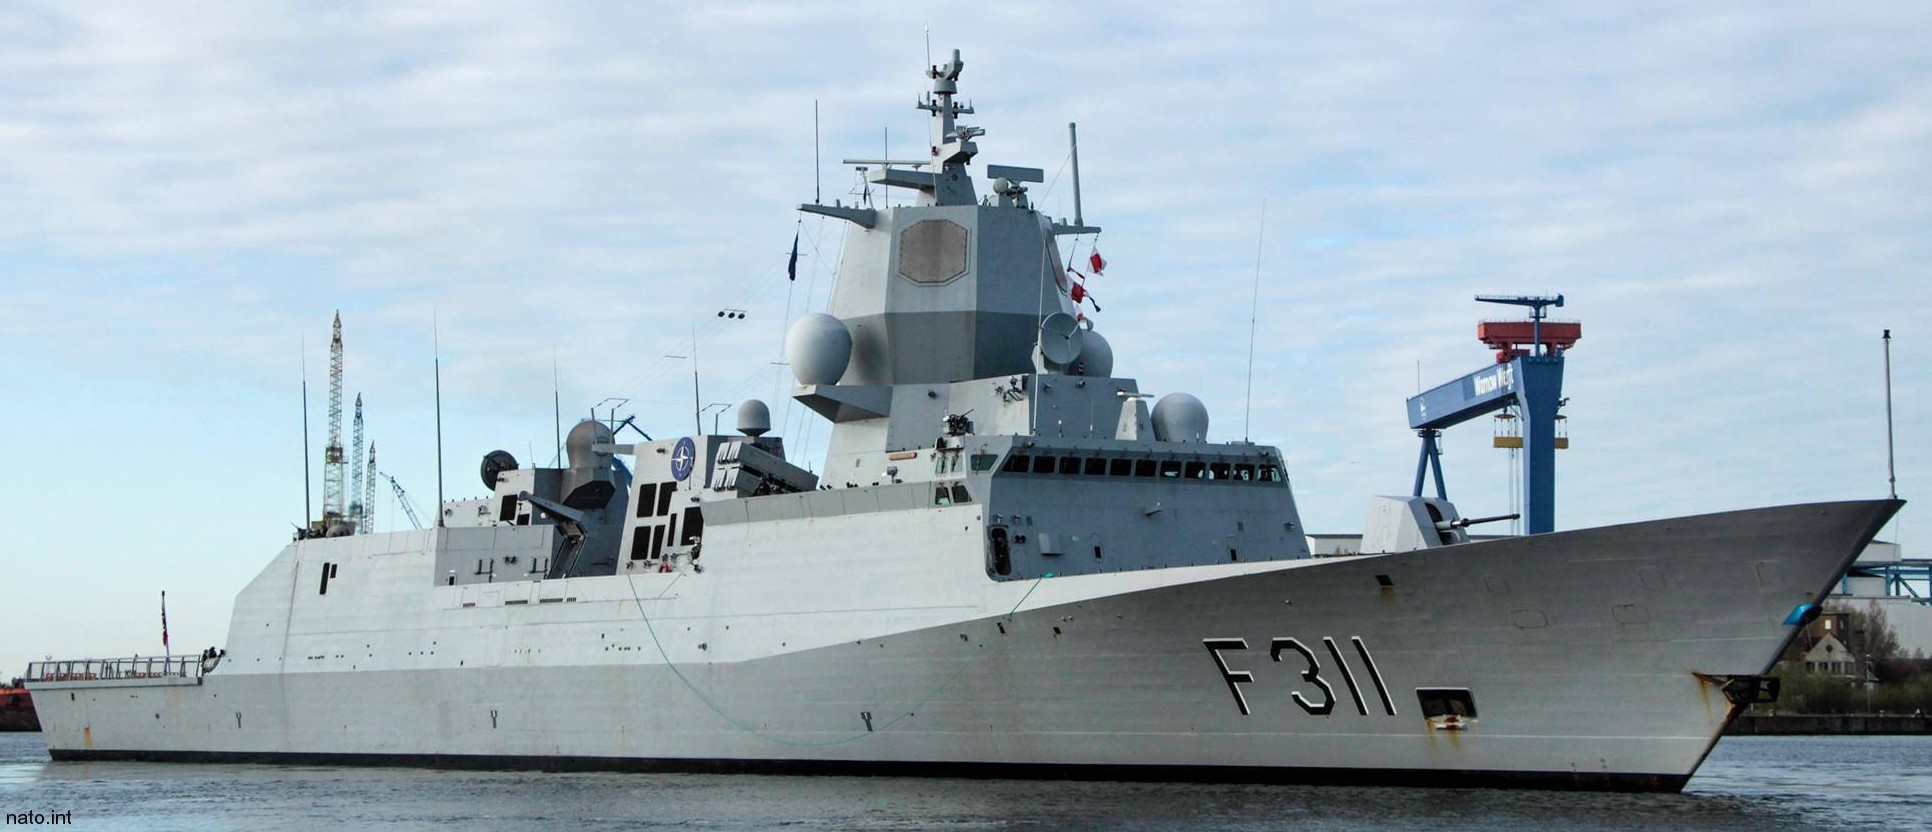 f-311 hnoms roald amundsen knm nansen class frigate royal norwegian navy sjoforsvaret 71